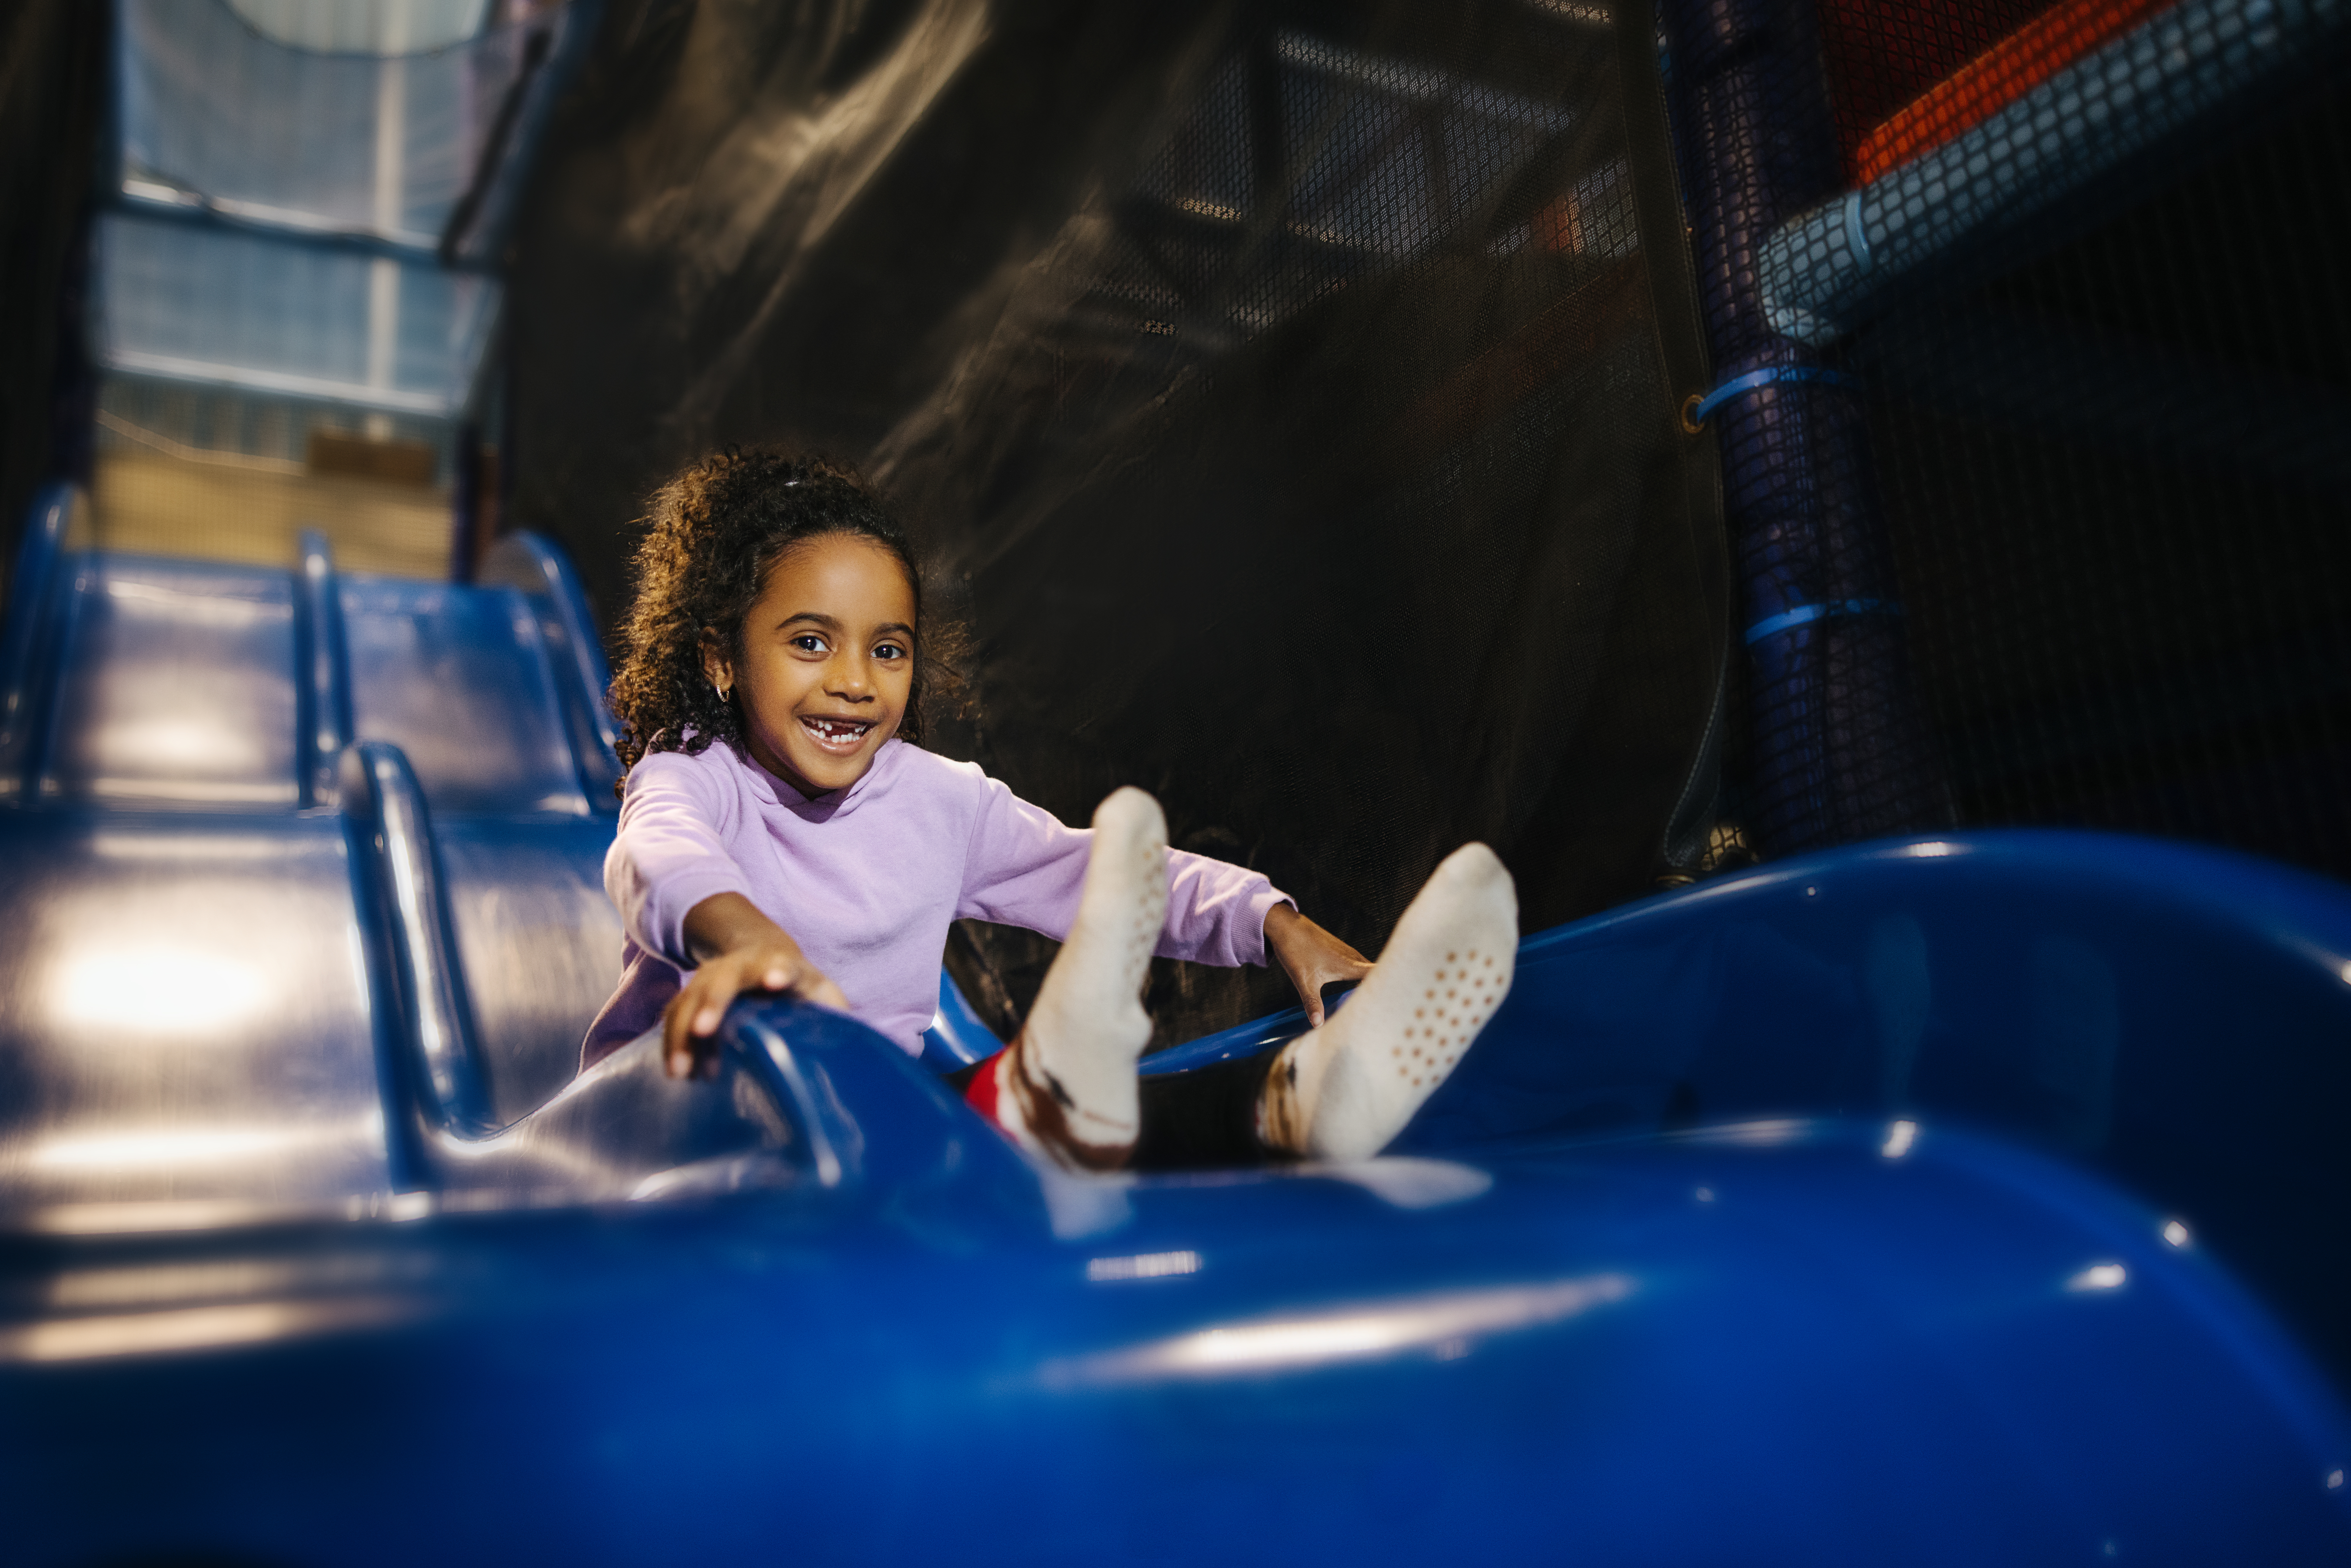 Little girl sliding down a blue slide